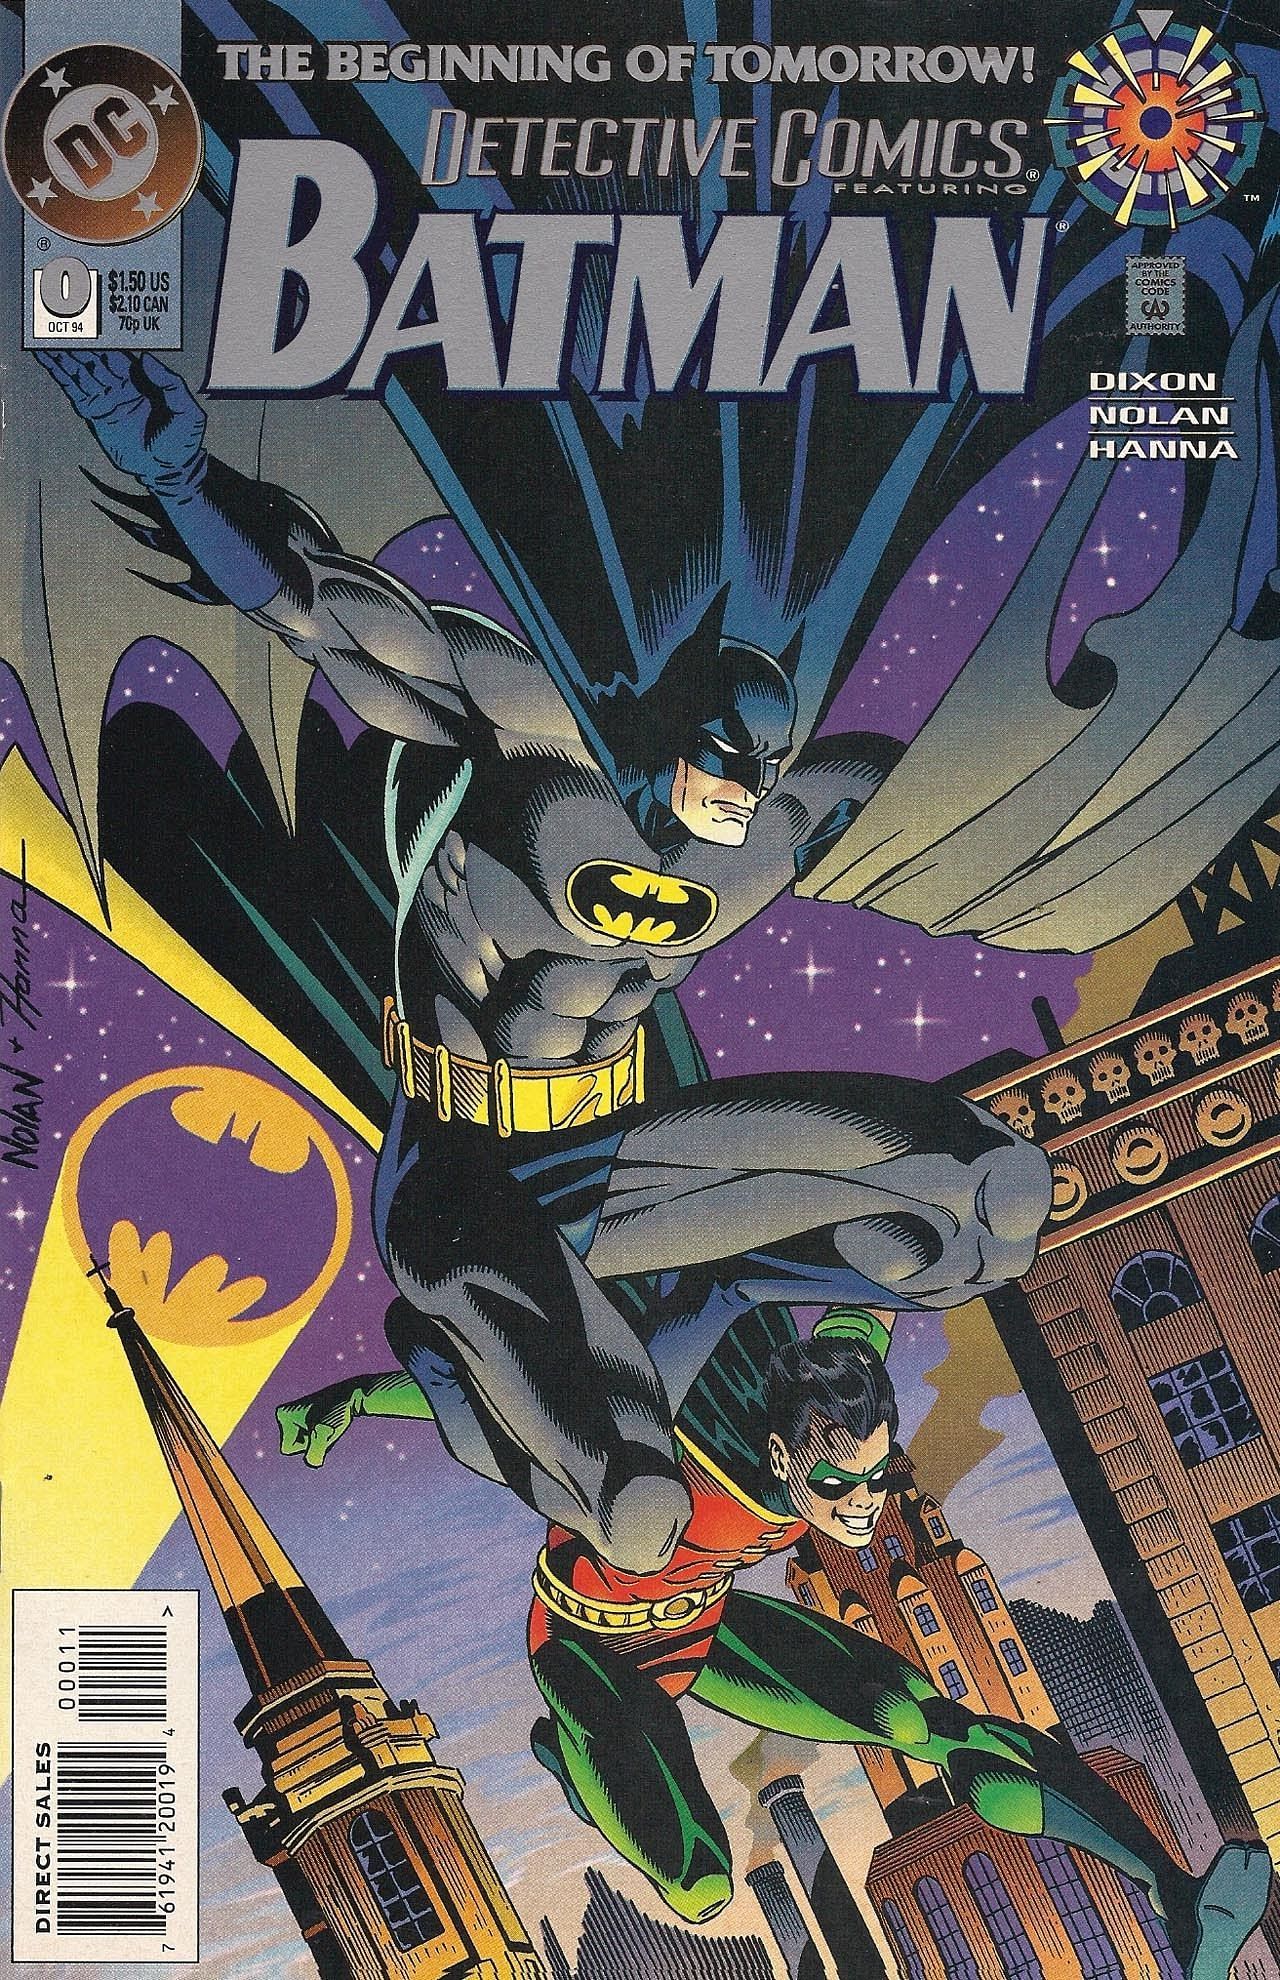 Detective Comics #0 (Image via DC Comics)